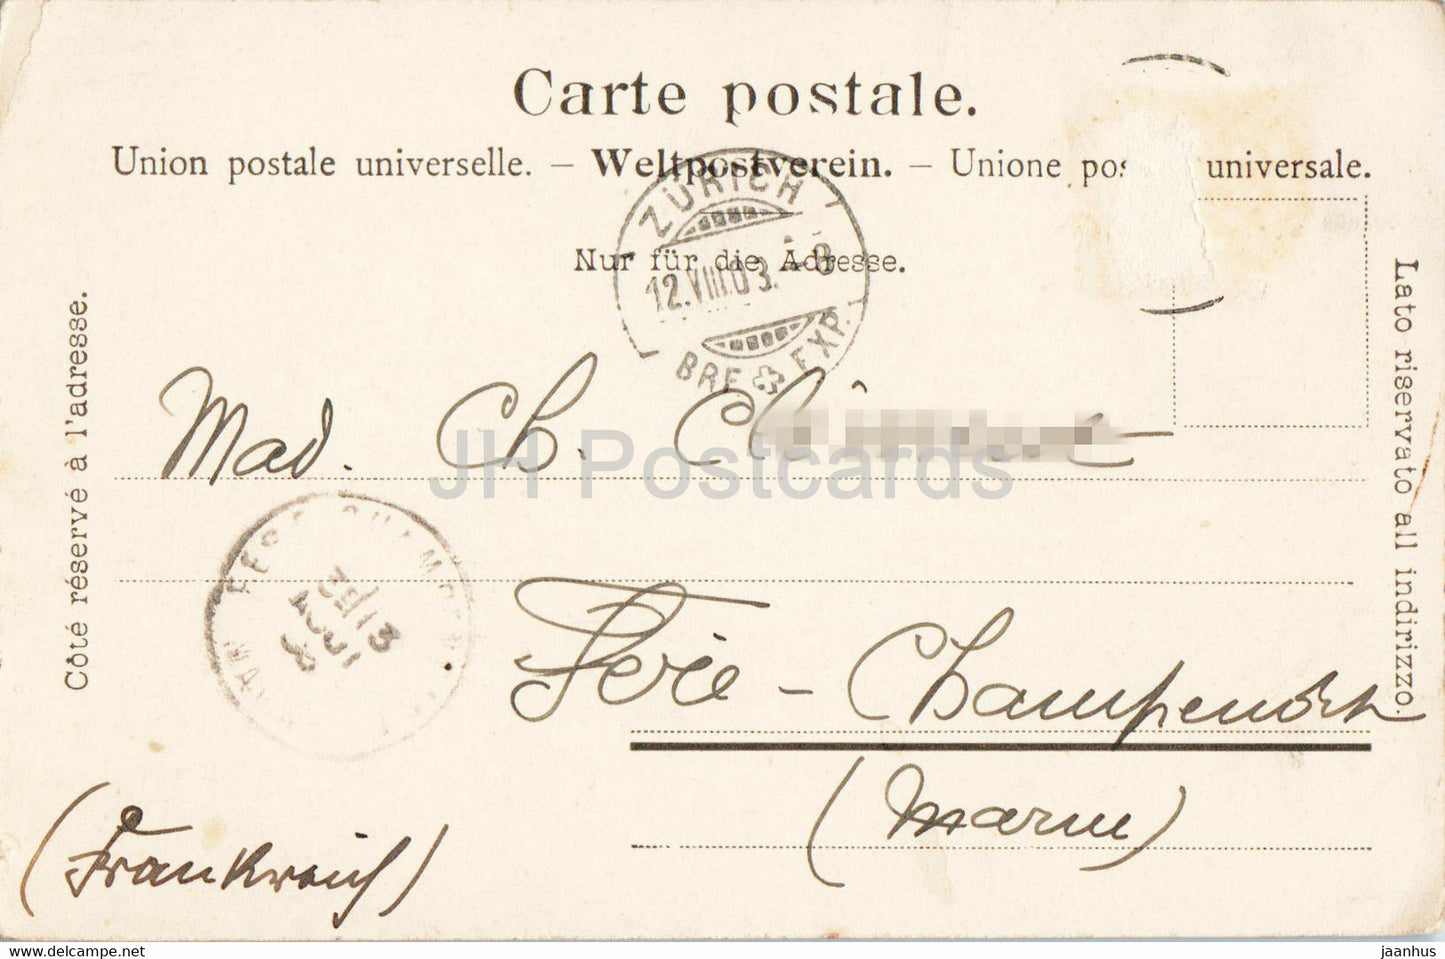 Zurich - Sonnenquai - 2603 - carte postale ancienne - 1903 - Suisse - utilisé